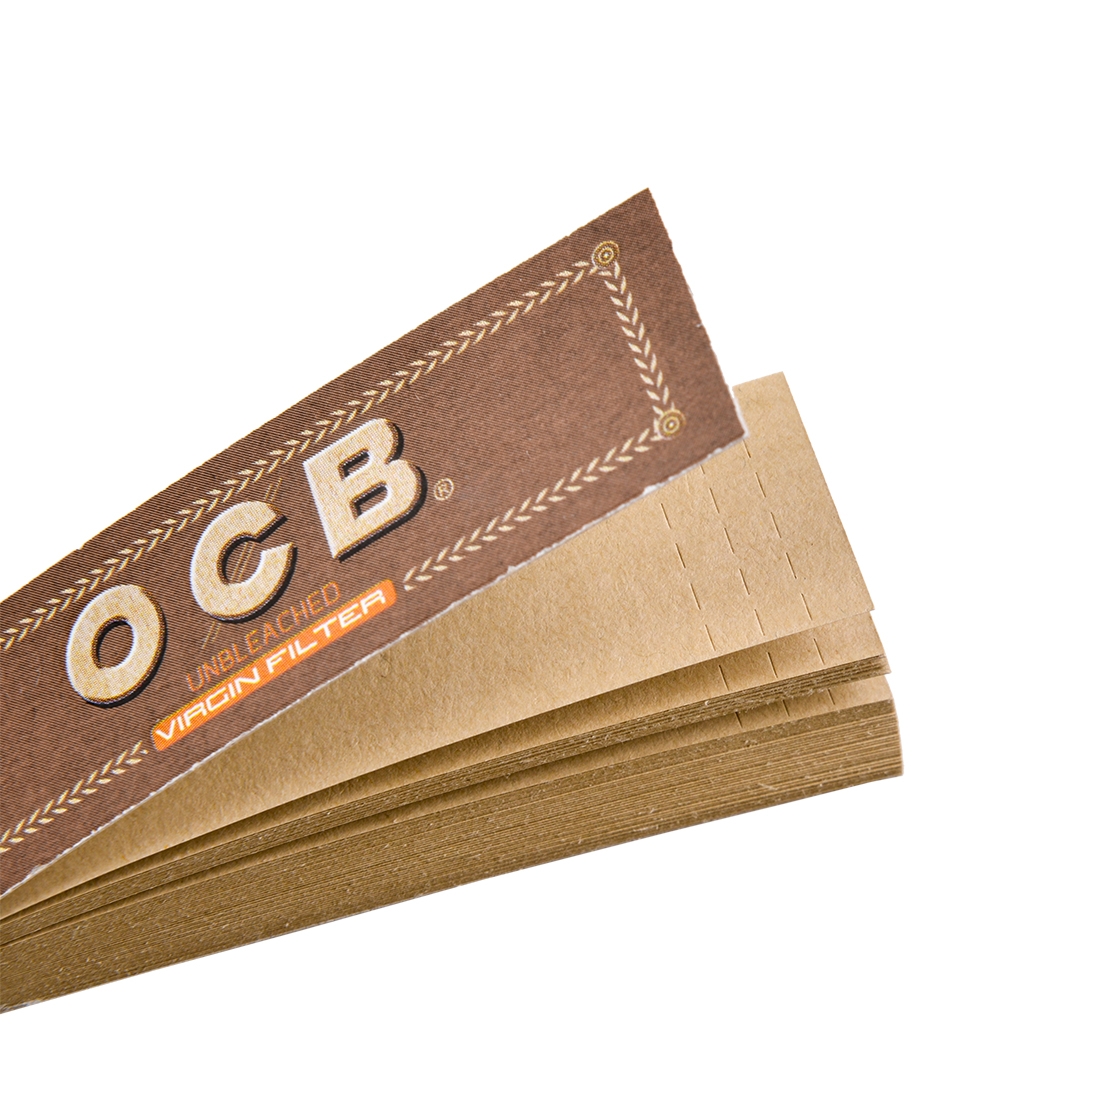 Filtres carton OCB par 25 carnets de 50